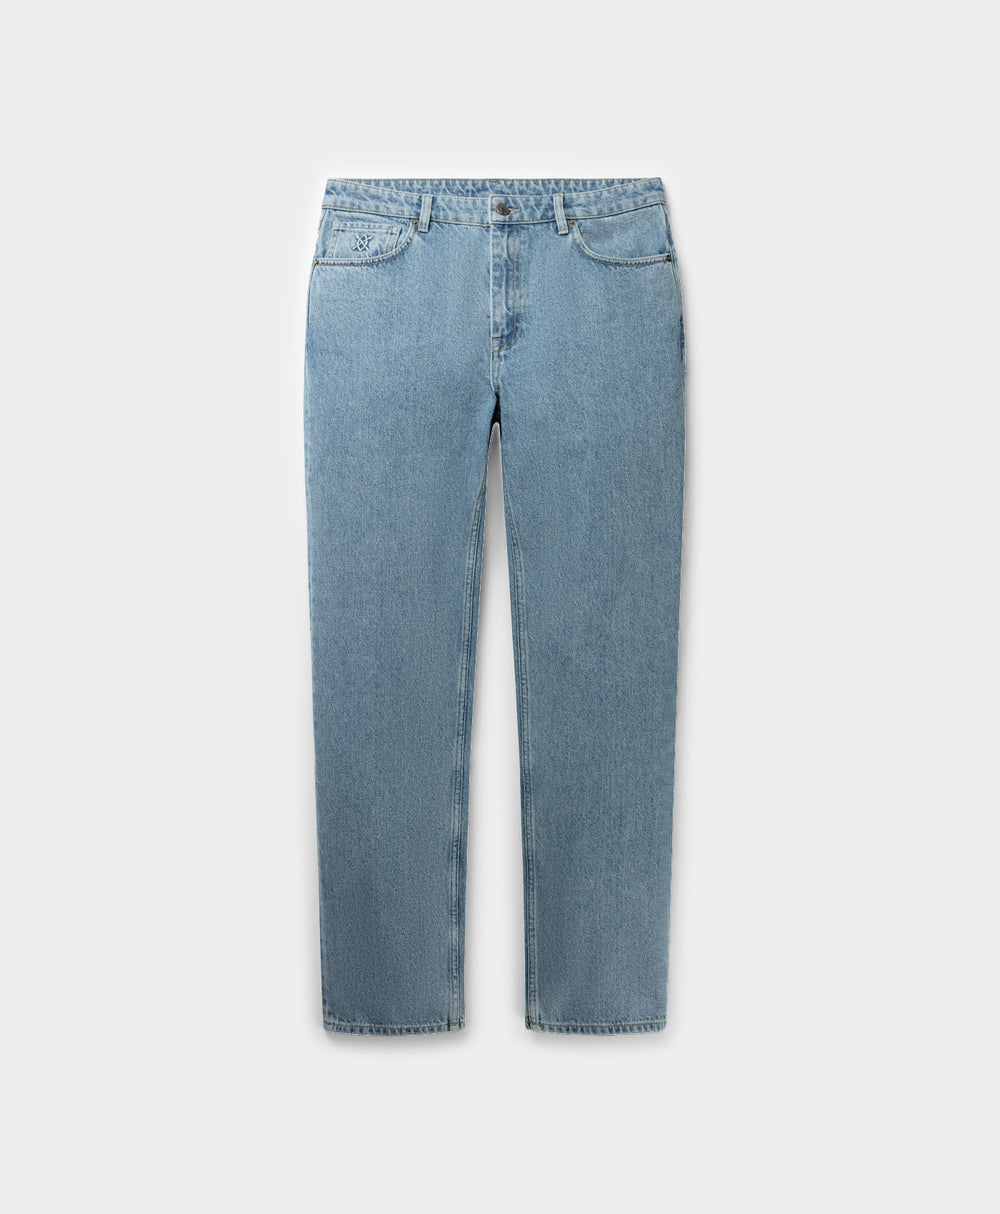 DP - Light Blue Kibo Jeans - Packshot - Front